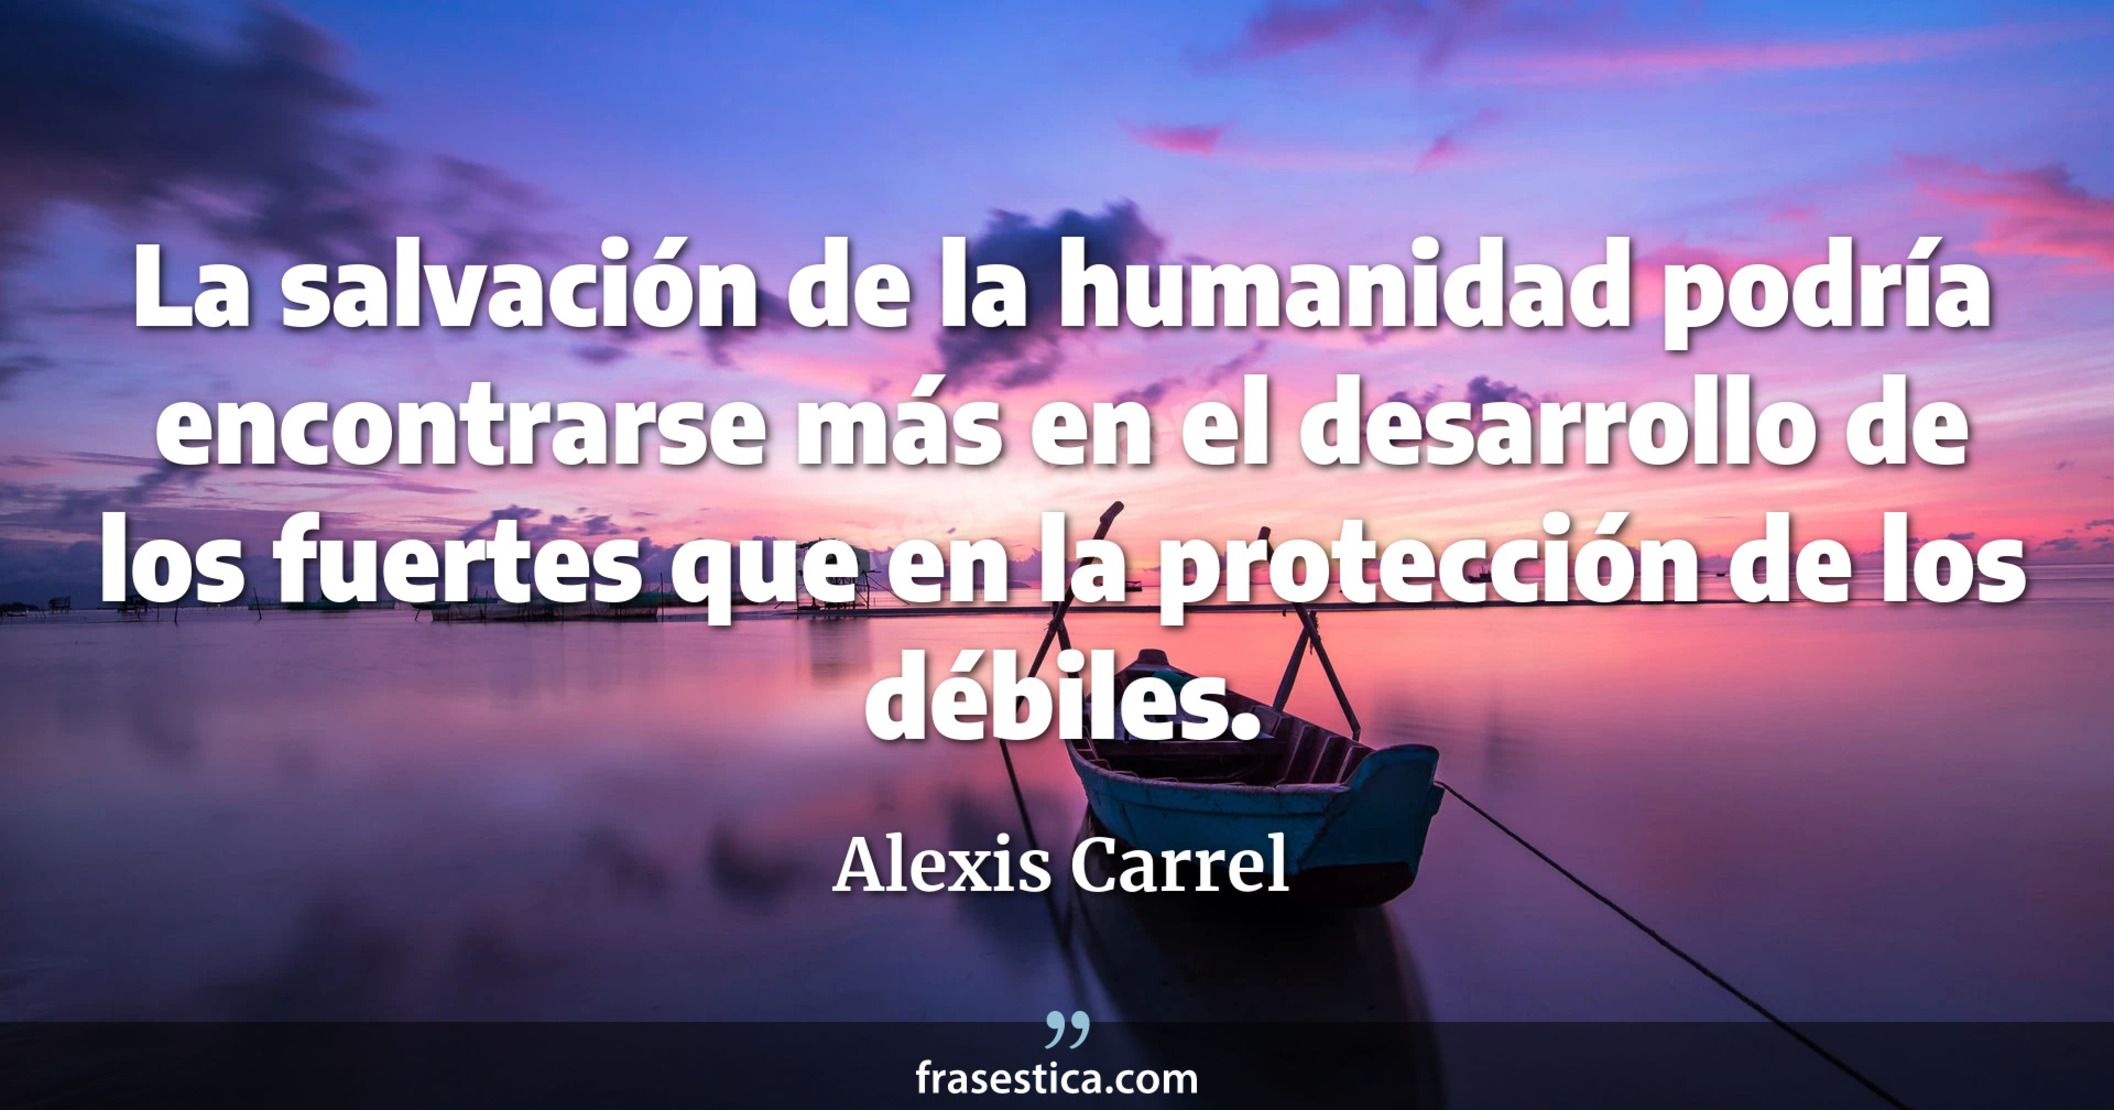 La salvación de la humanidad podría encontrarse más en el desarrollo de los fuertes que en la protección de los débiles. - Alexis Carrel